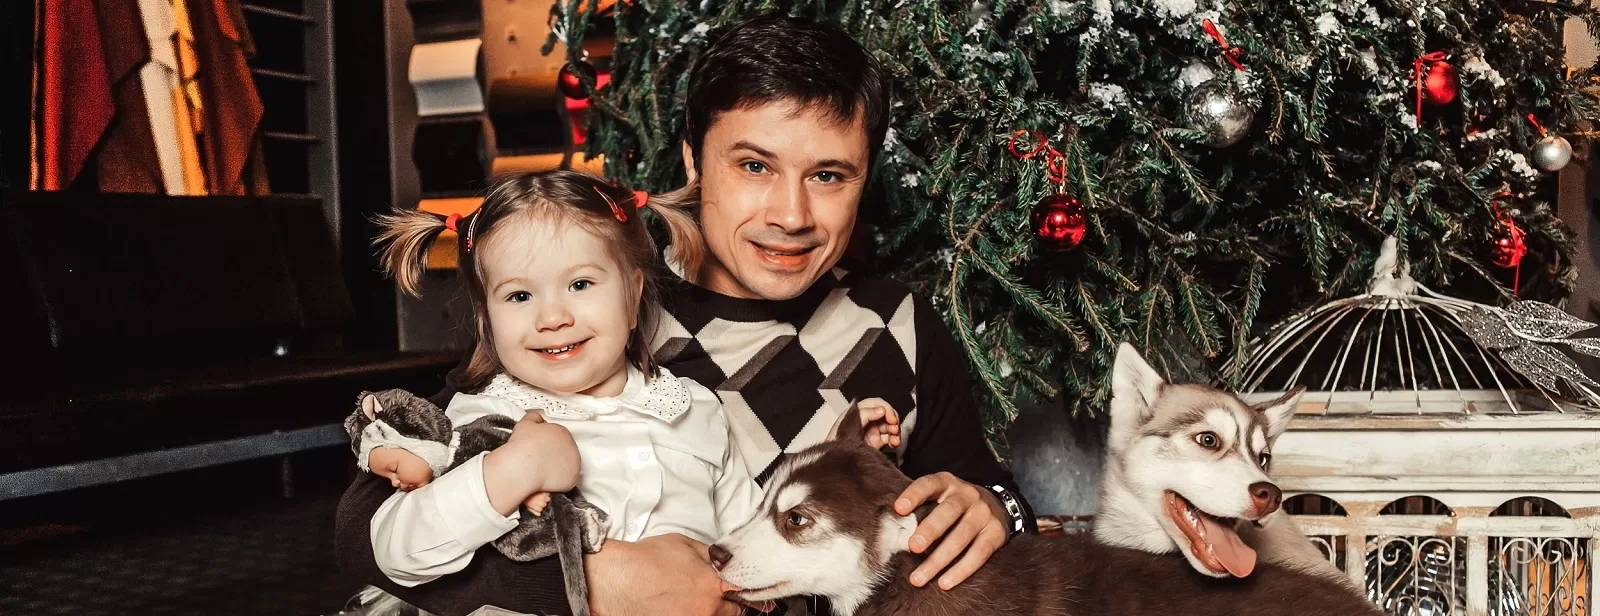 «Фабрика Санта Клауса». Компания Порше Центр Москва поздравила детей с новогодними праздниками.